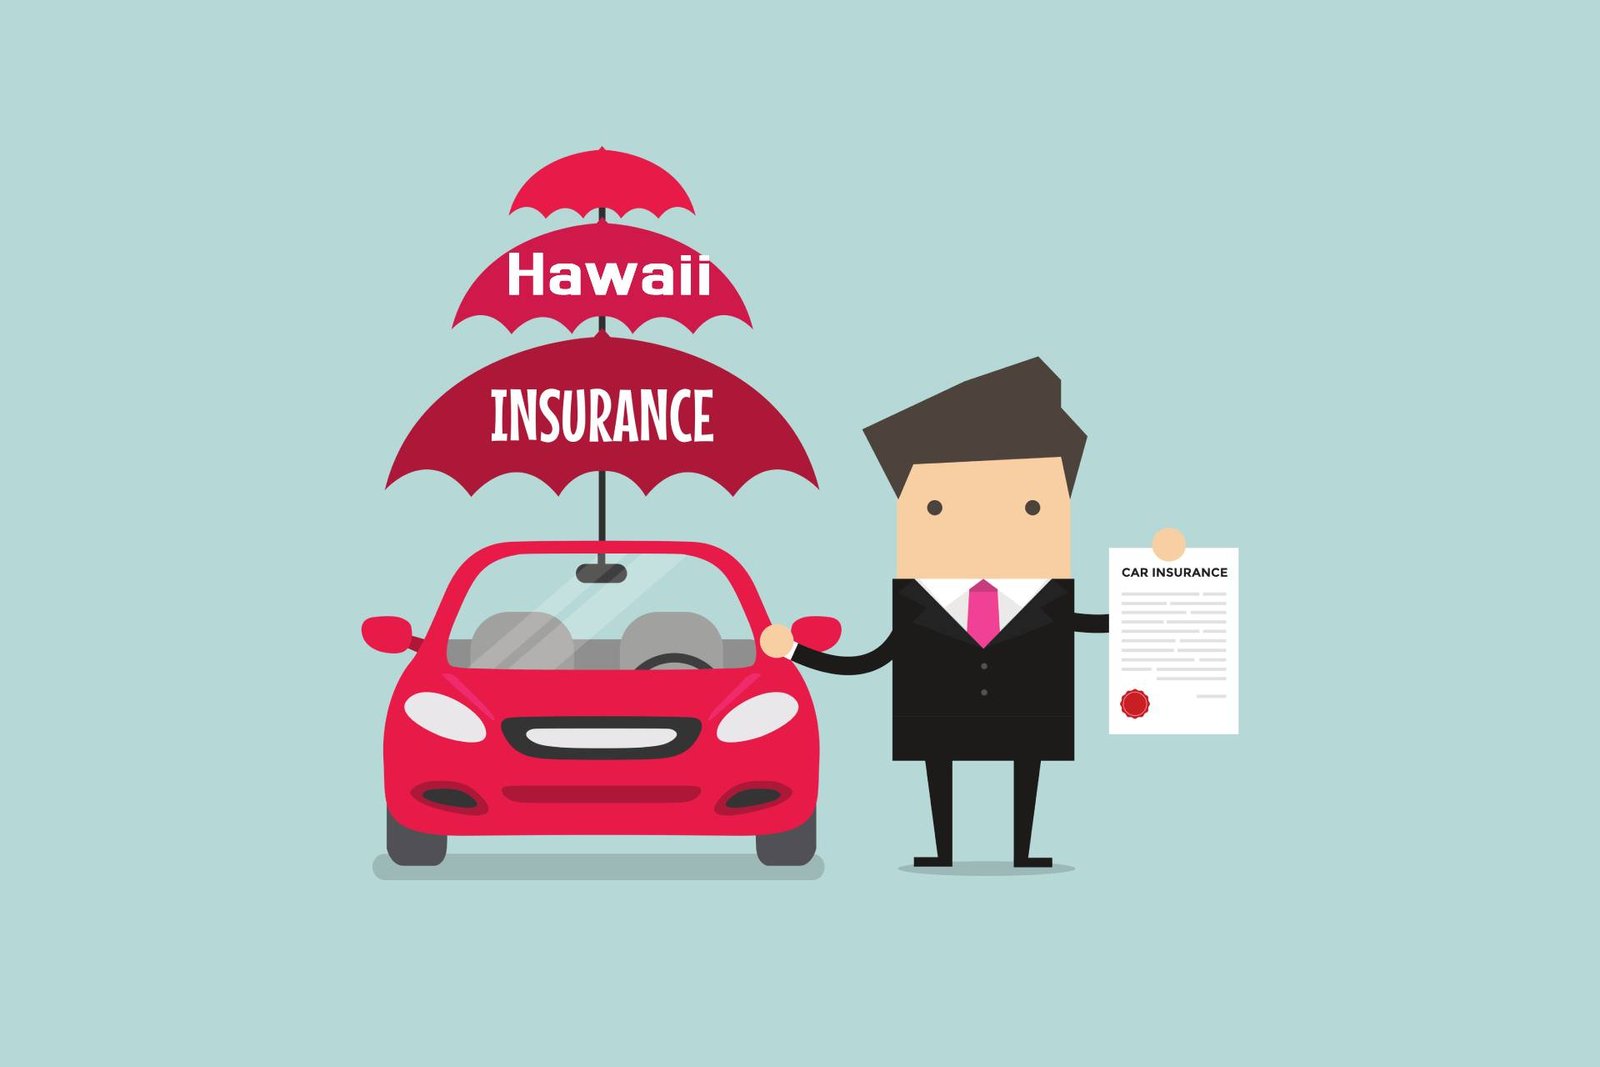 Car insurance in Hawaii